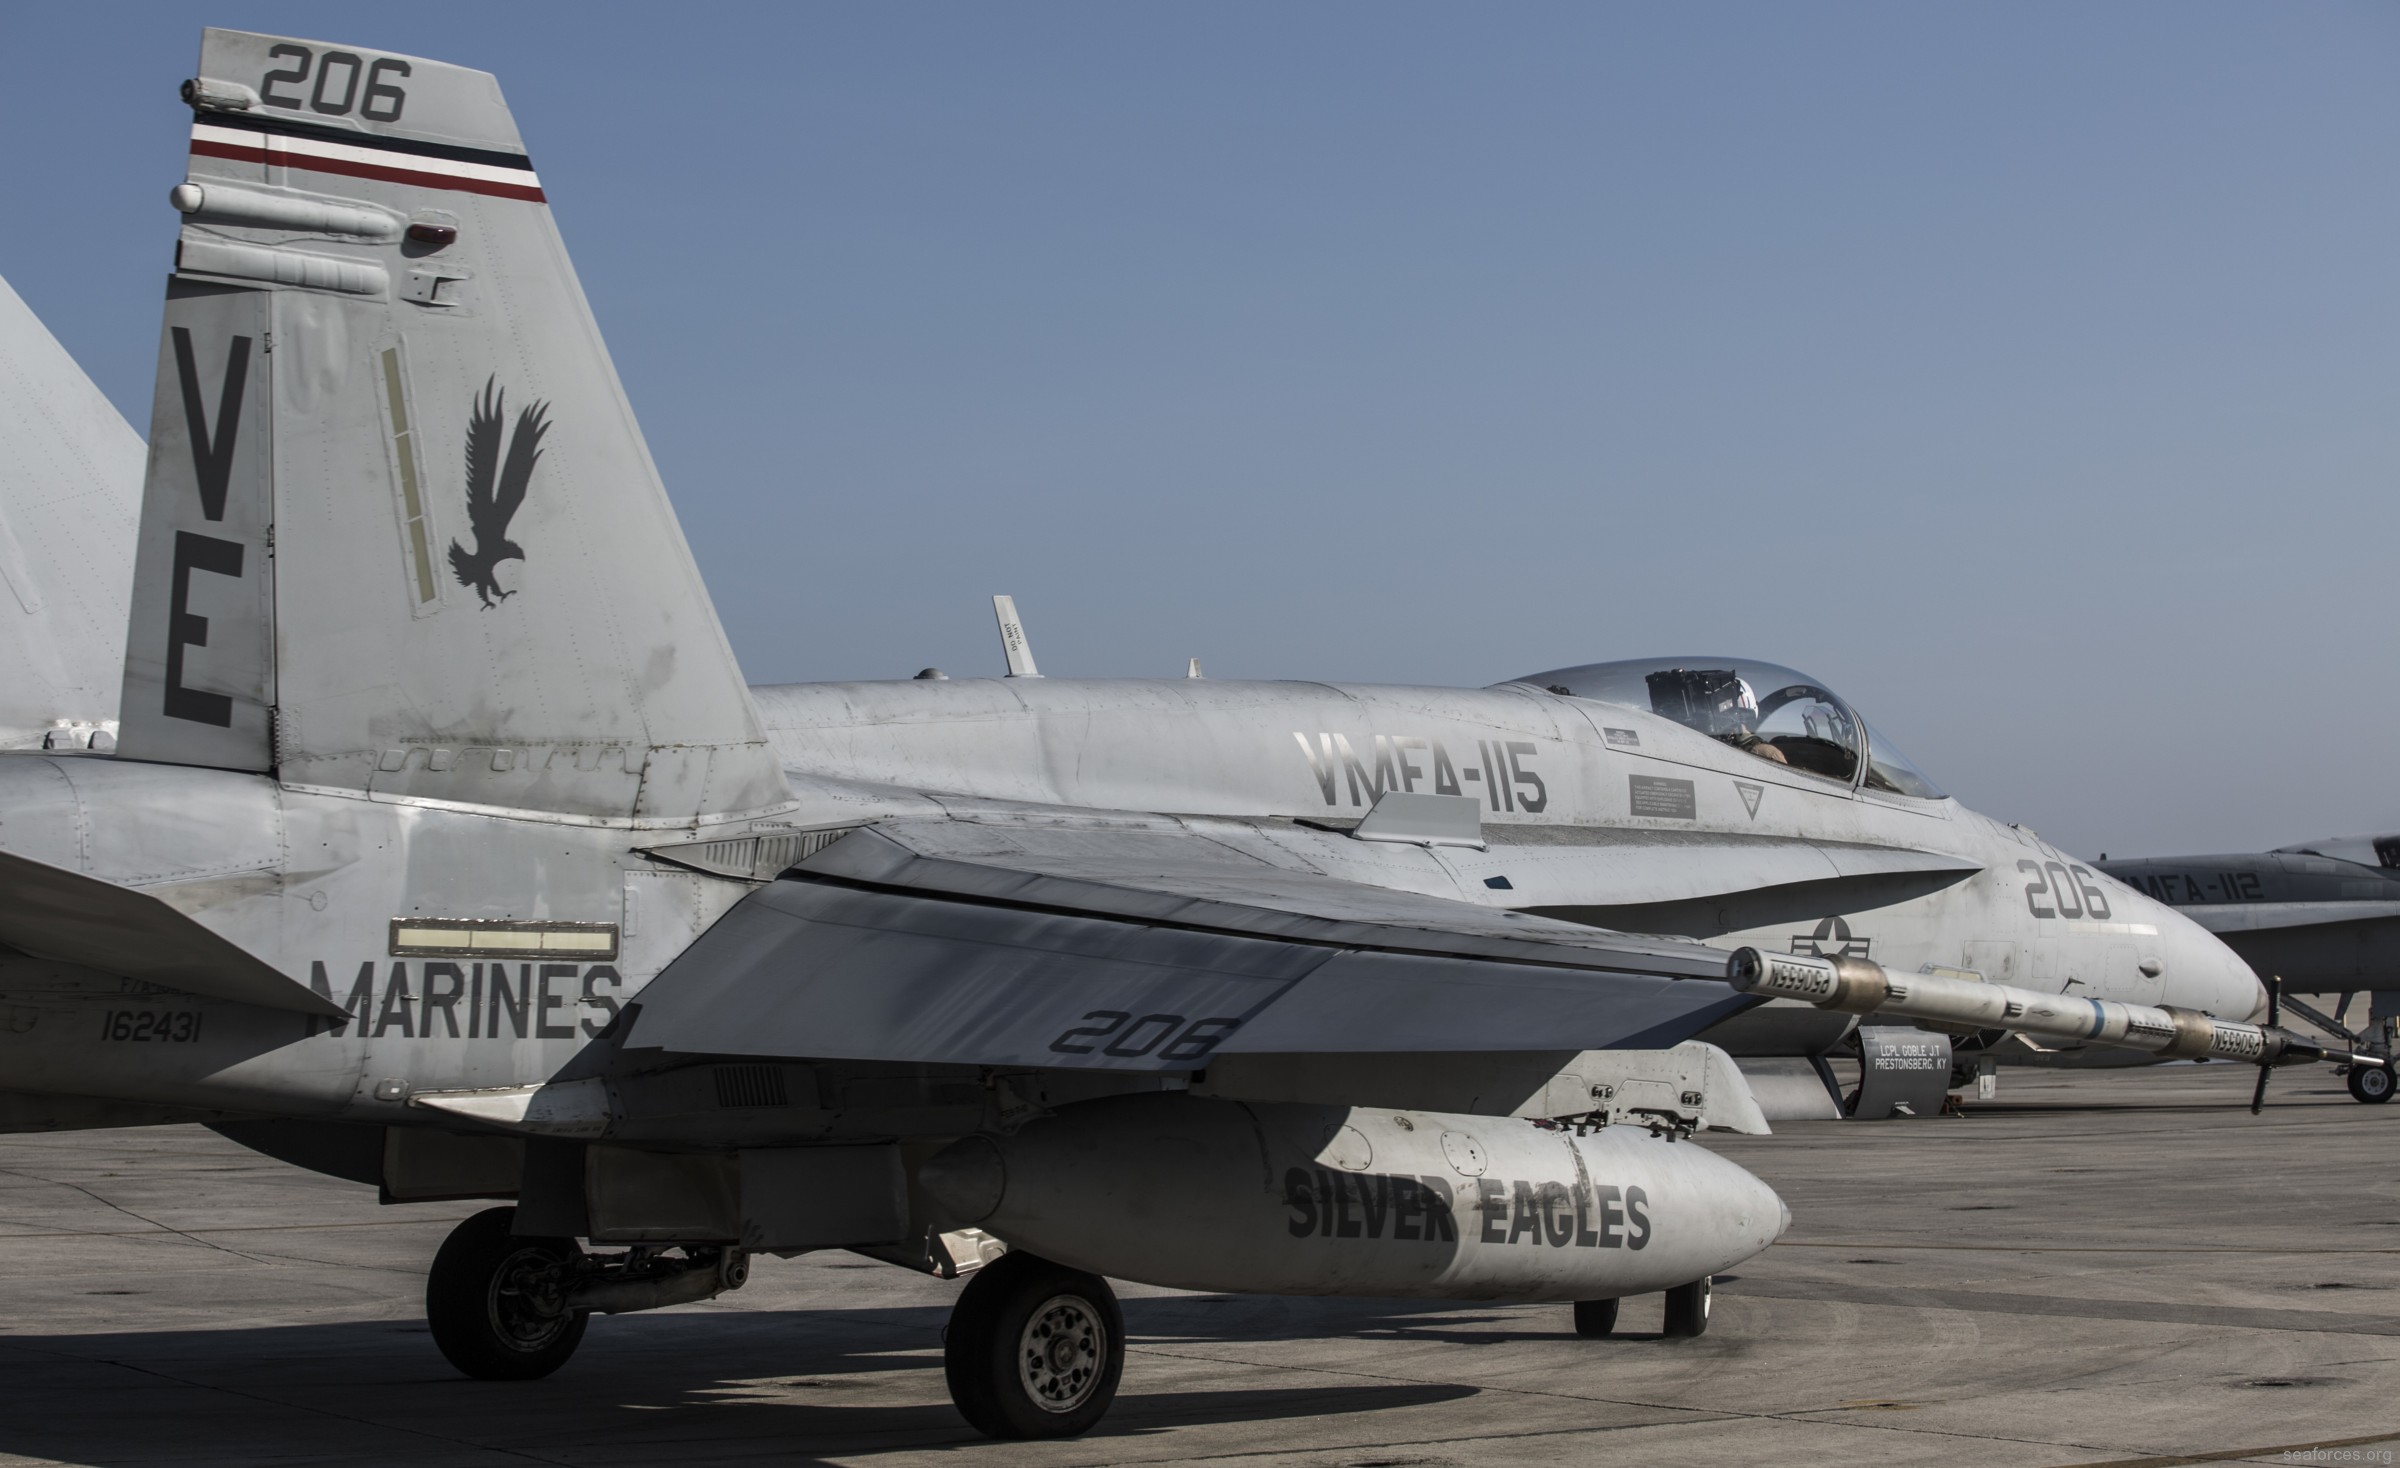 vmfa-115 silver eagles marine fighter attack squadron f/a-18a+ hornet 132